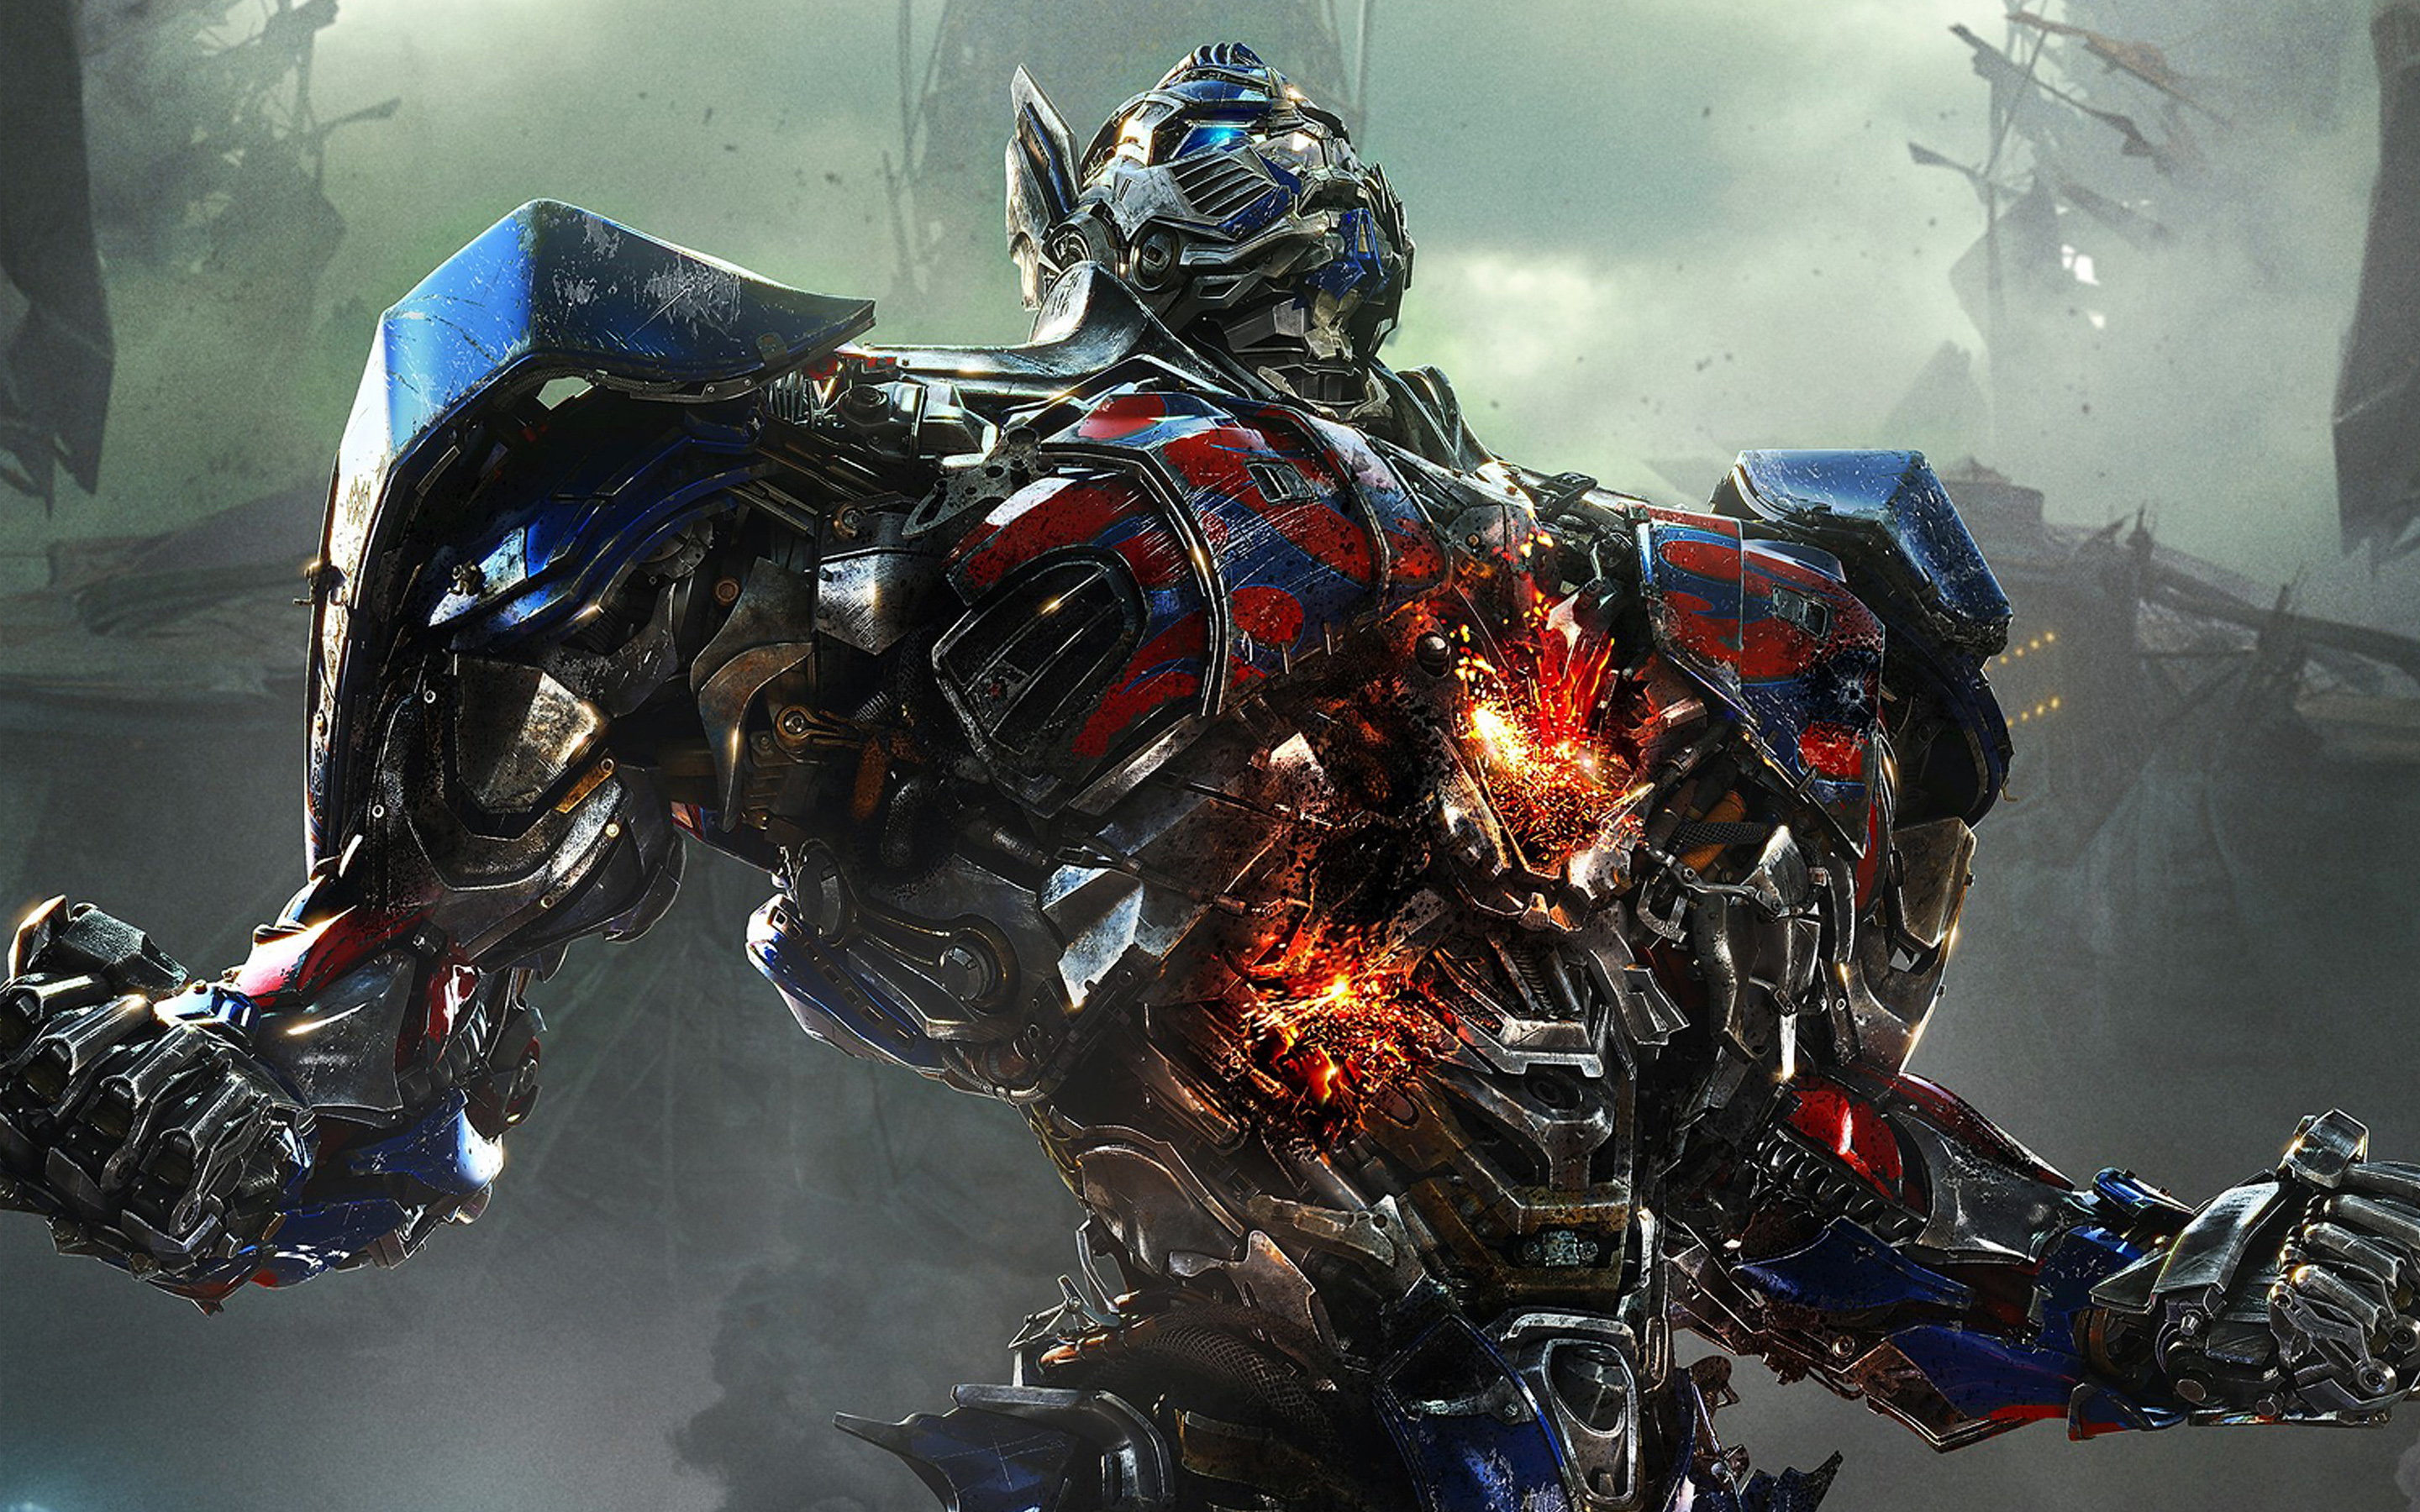 Transformers: O Último Cavaleiro não vai ganhar continuação, diz produtor